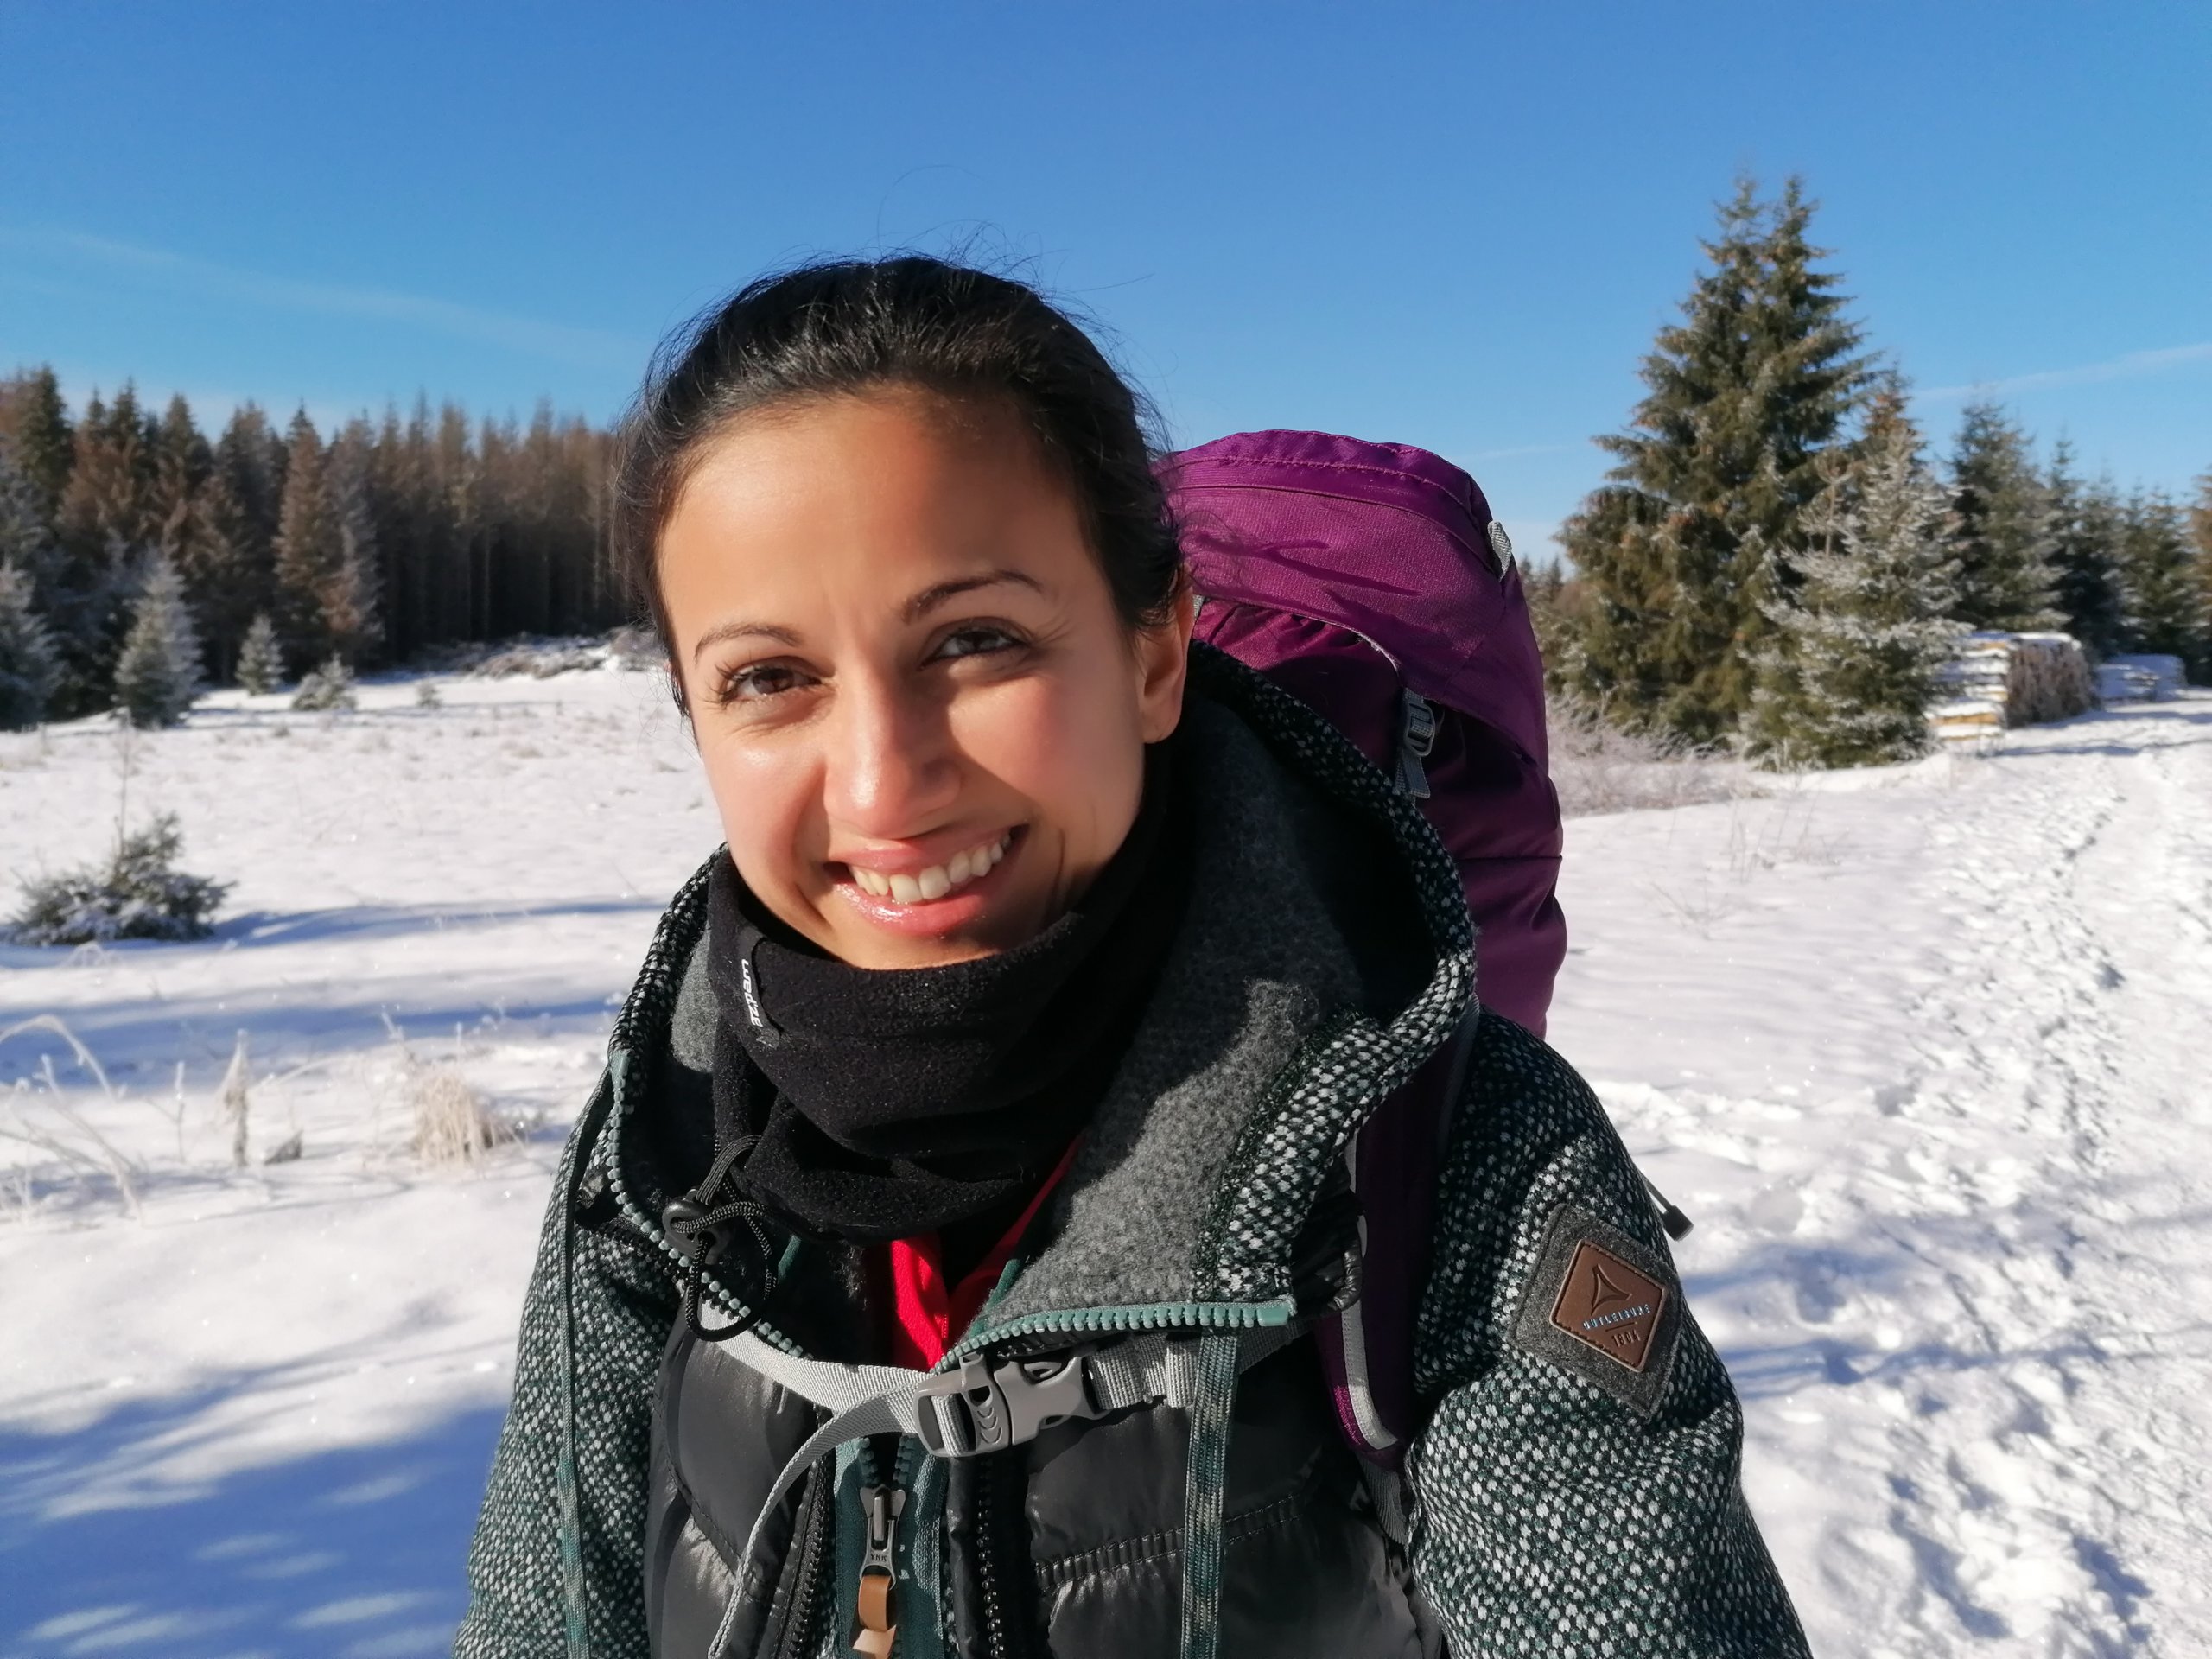 Sheida Nasseri-Jafar Teilnehmerin der Wintertrekkingtour im Harz. Mehr dazu liest du im Blogbeitrag